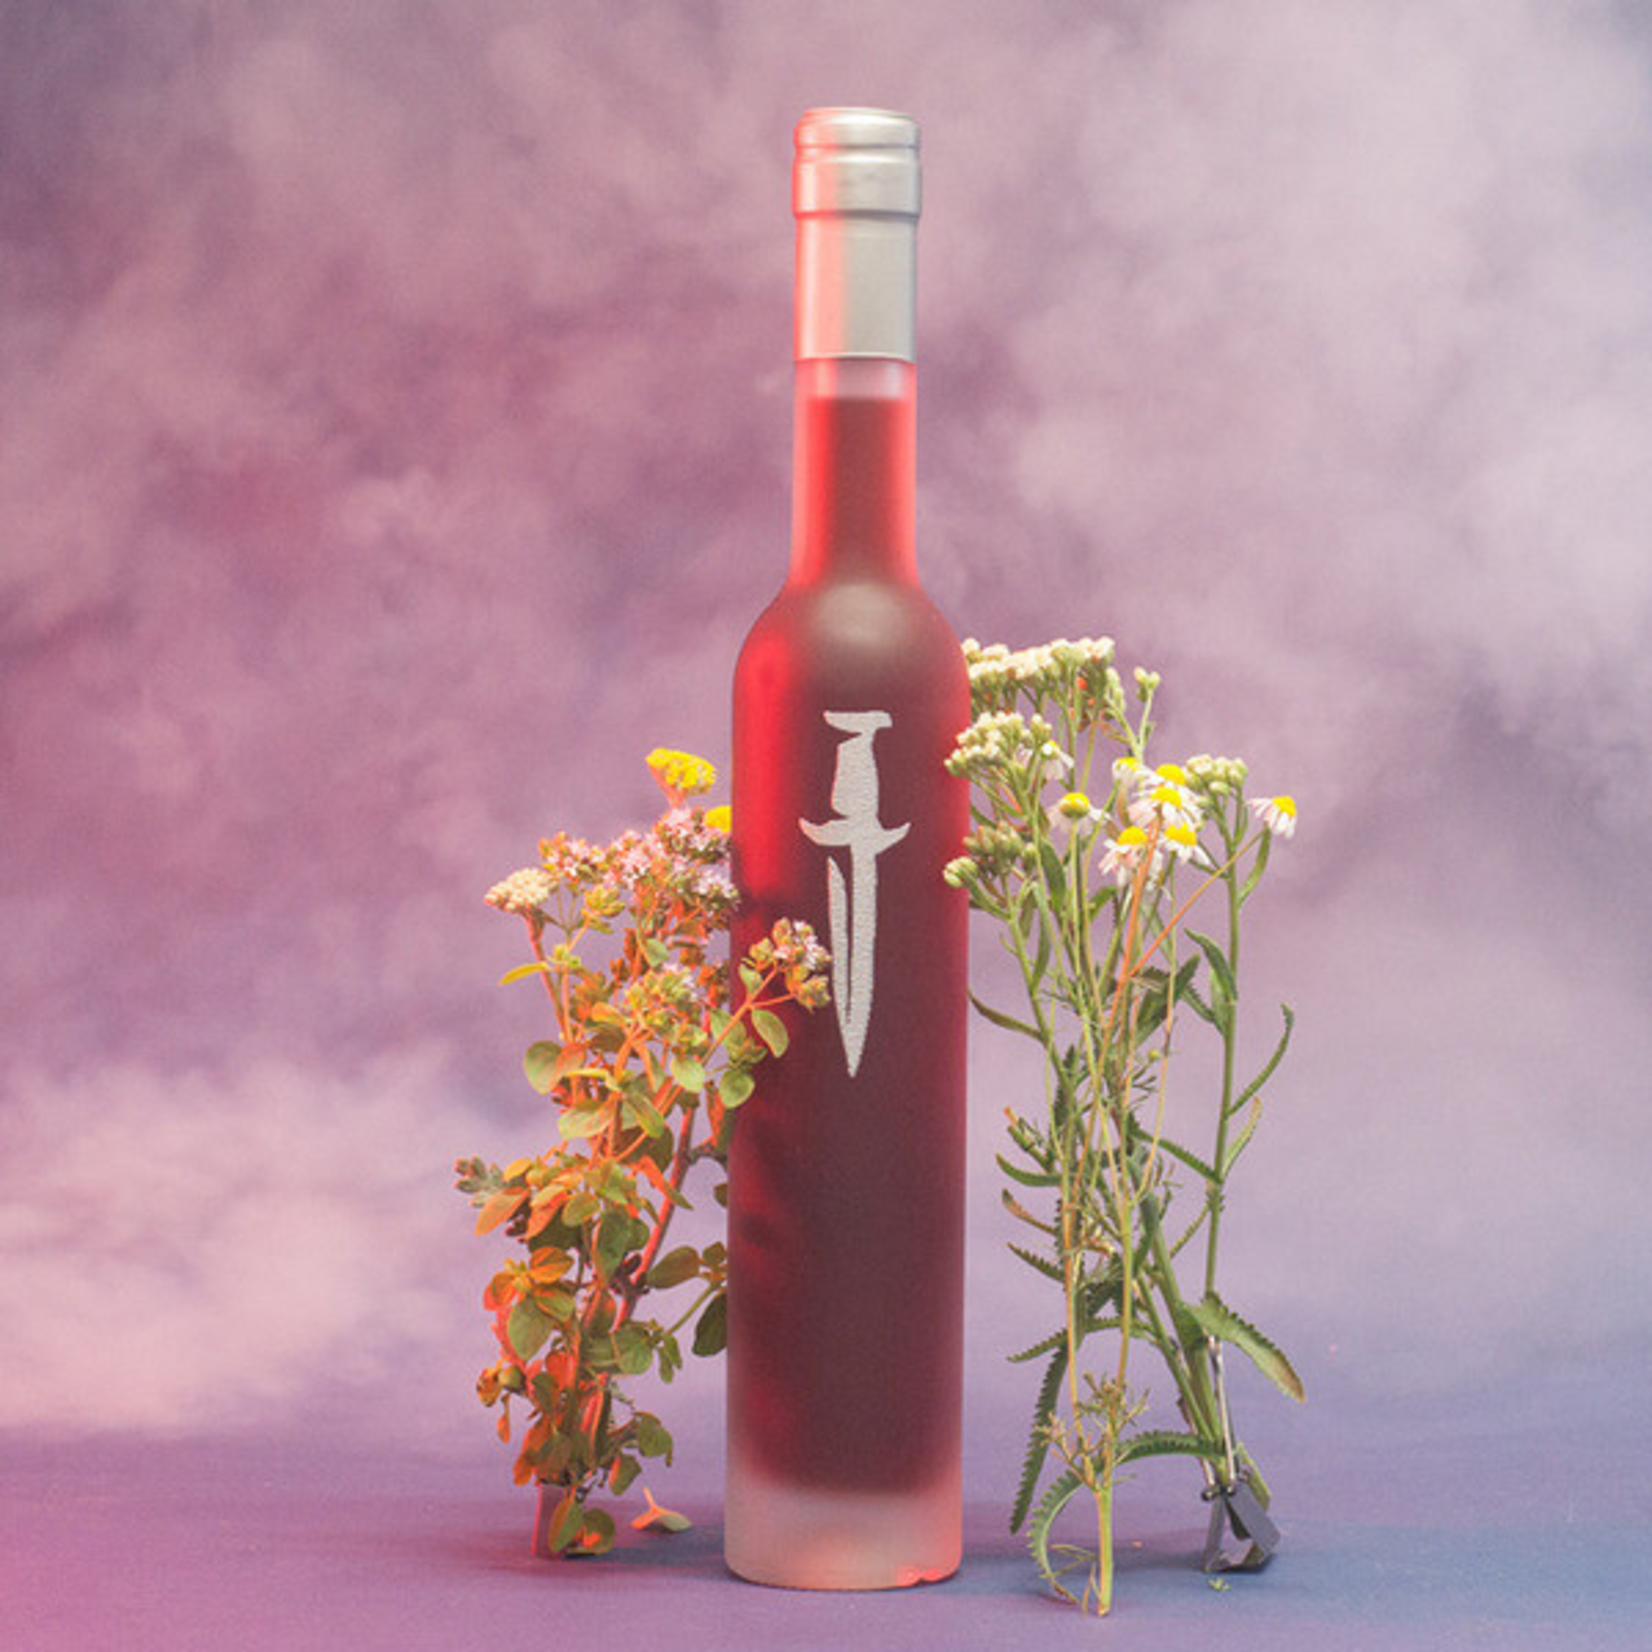 Wine Enlightenment Wines ‘Dagger’ Tart Cherry Yarrow Hemlock Chamomile Mead 375ml